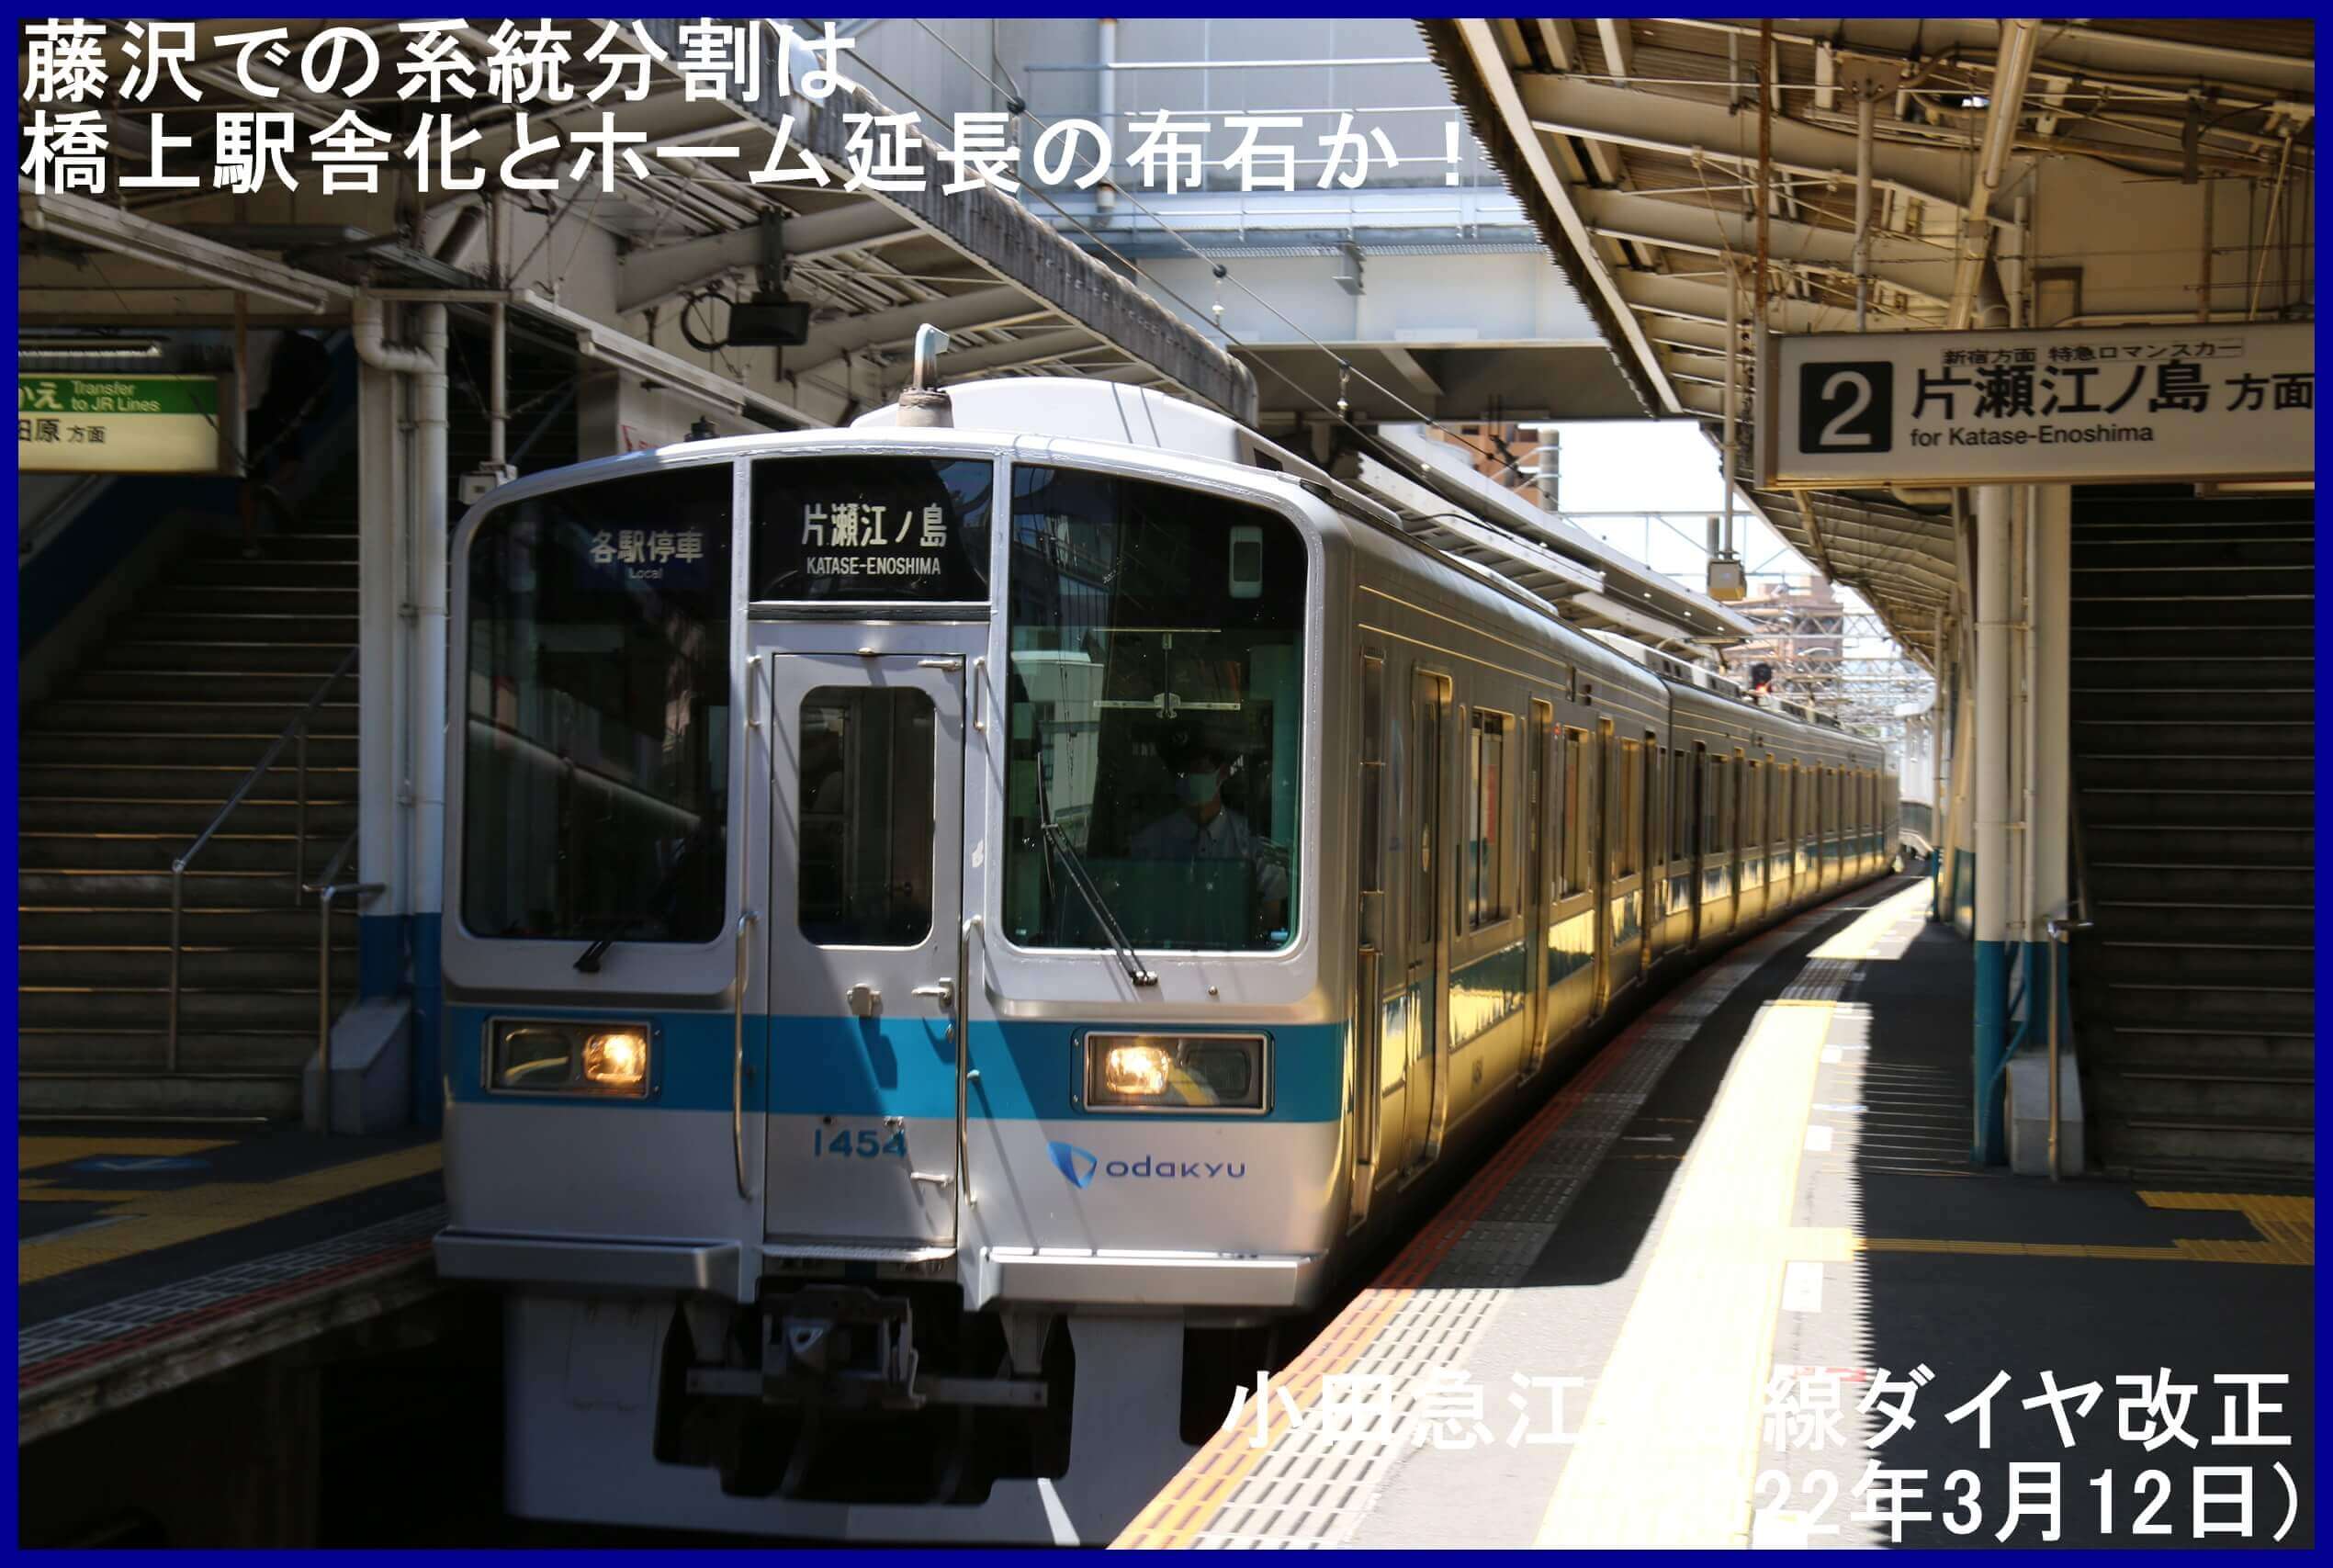 藤沢での系統分割は橋上駅舎化とホーム延長の布石か！　小田急江ノ島線ダイヤ改正(2022年3月12日)